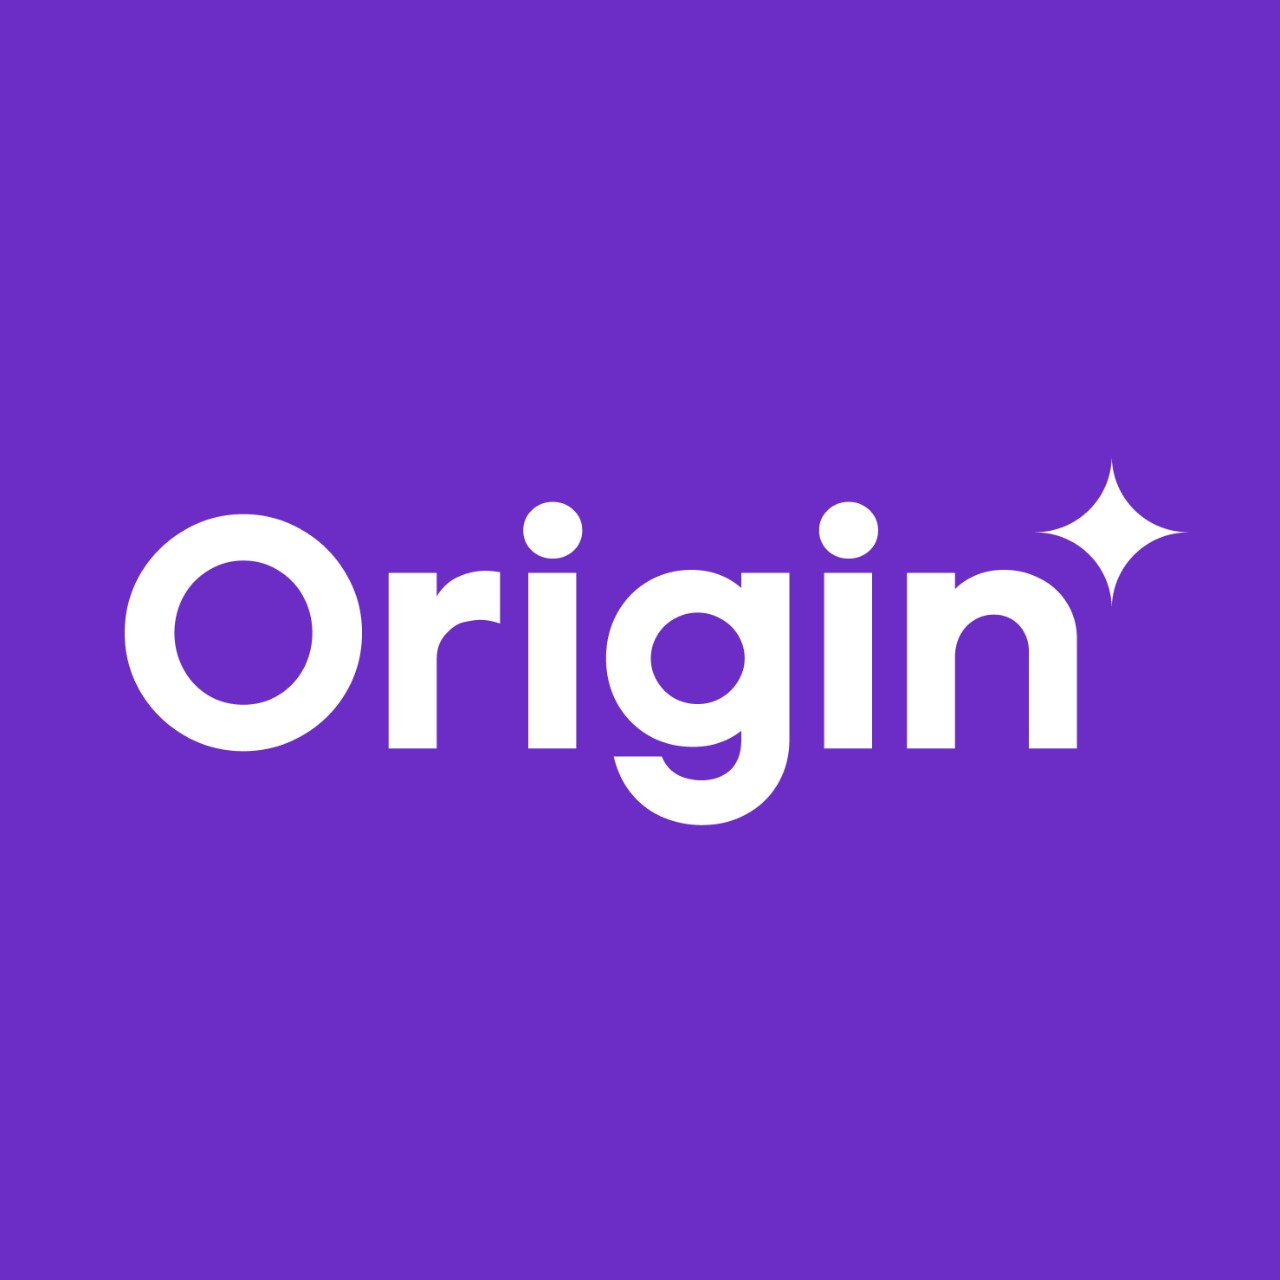 Originux UI Design Company in Bangalore